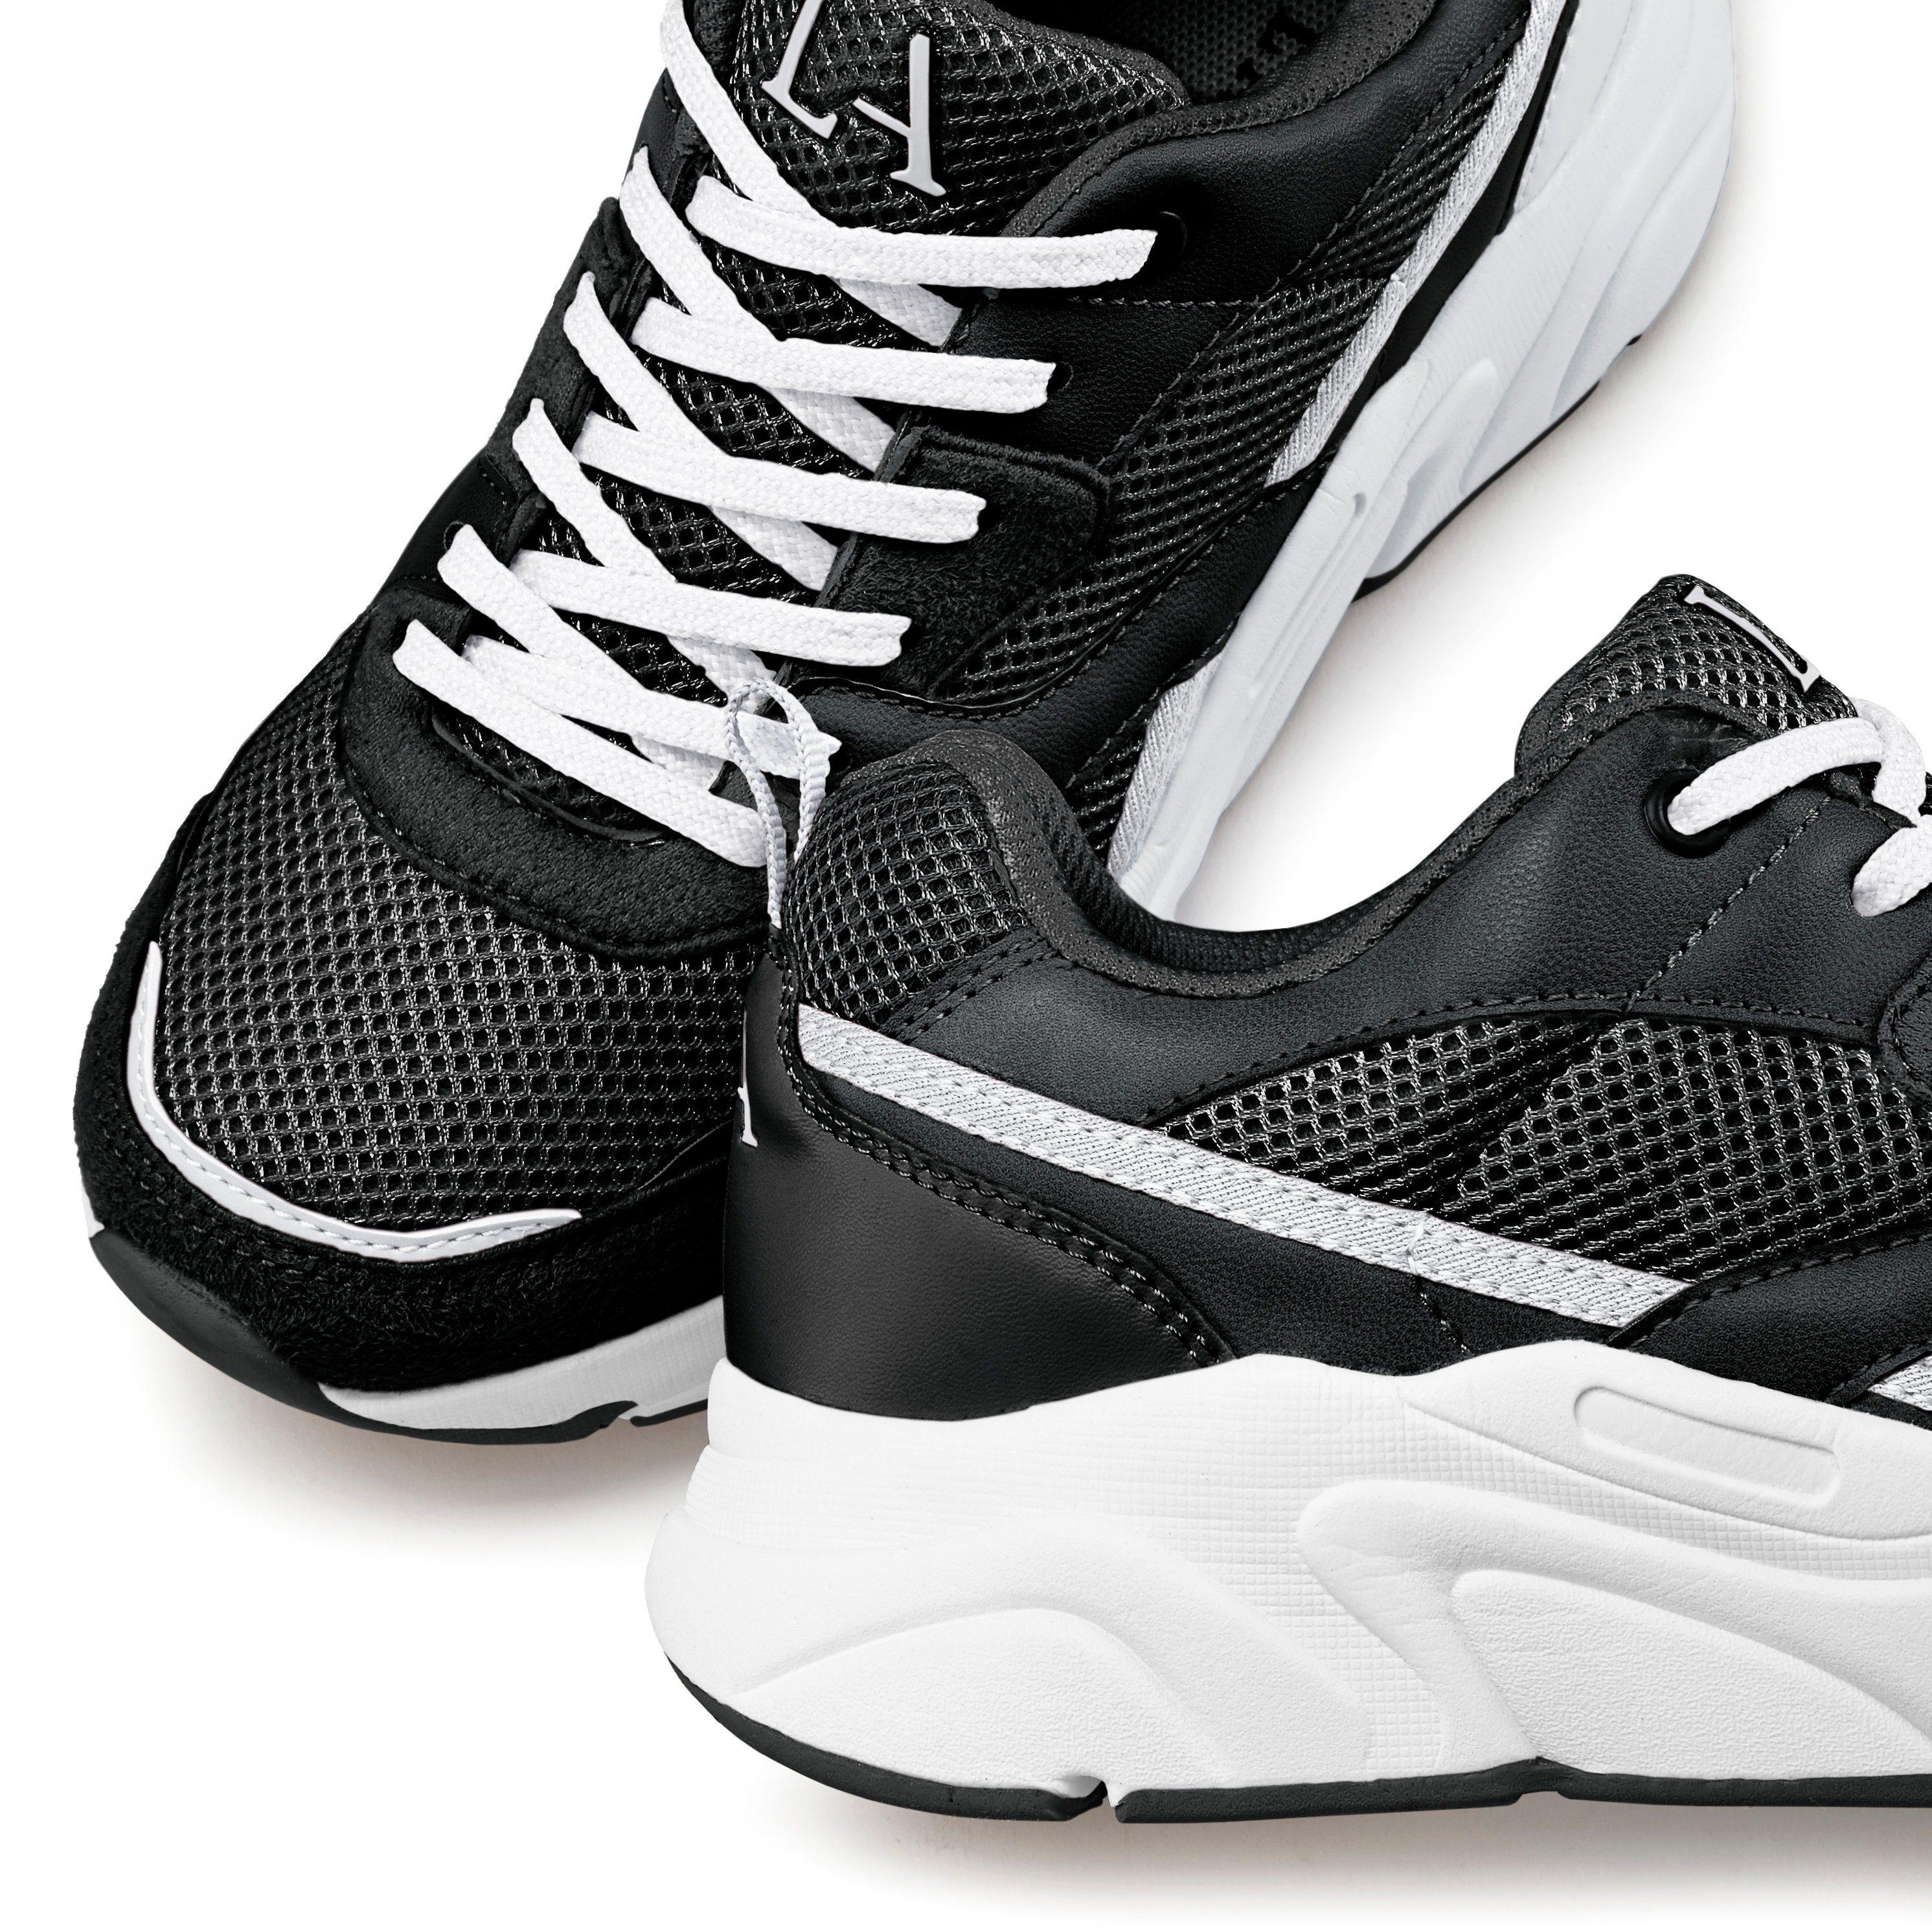 Lascana Sneaker SportScheck kaufen von Damen Online im Shop schwarz-weiß